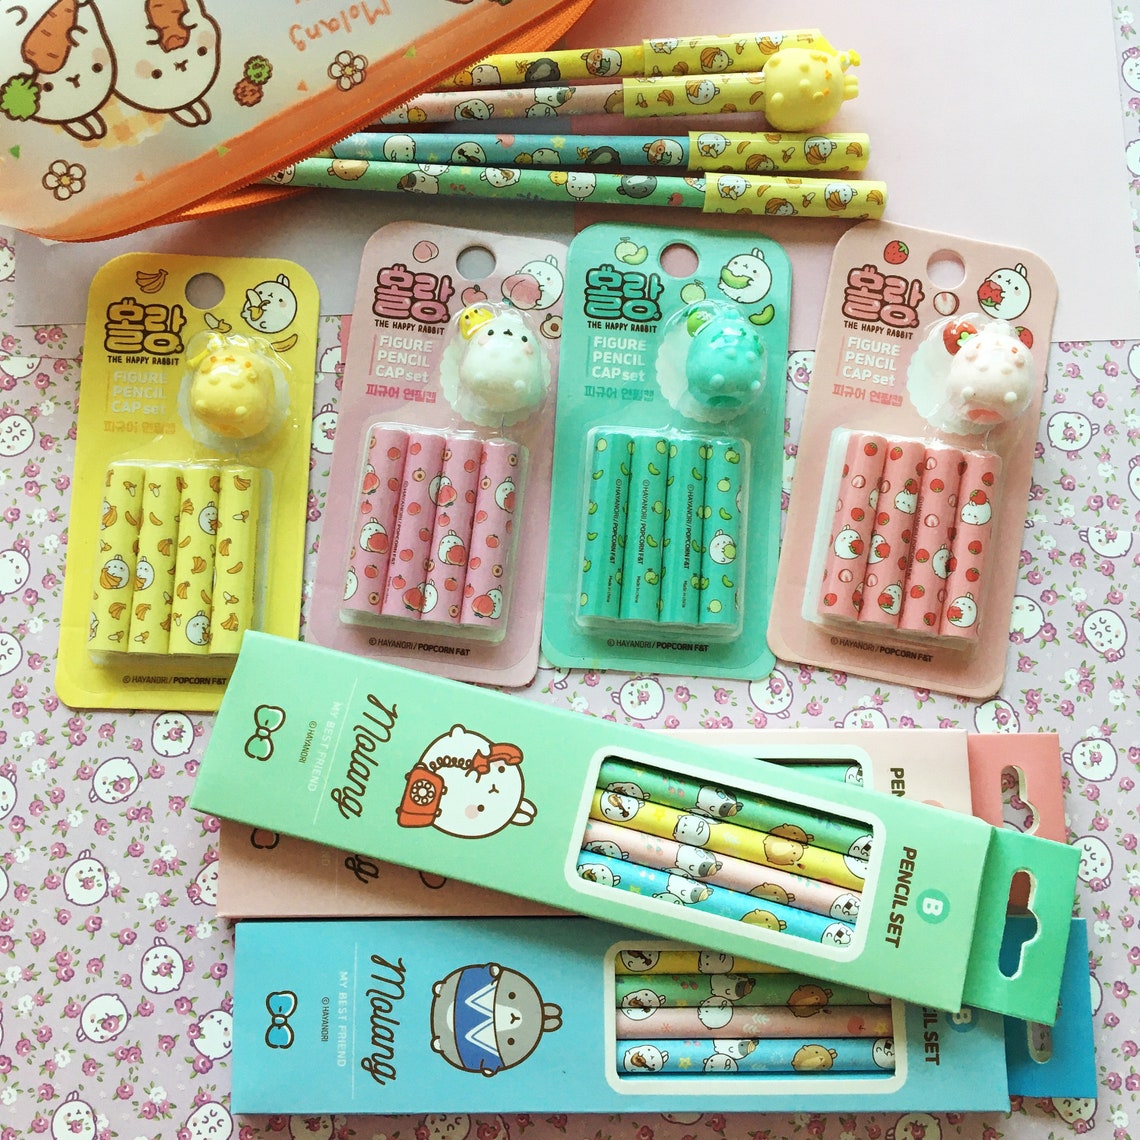 Molang pencil caps and pencil set cute school supplies | Etsy